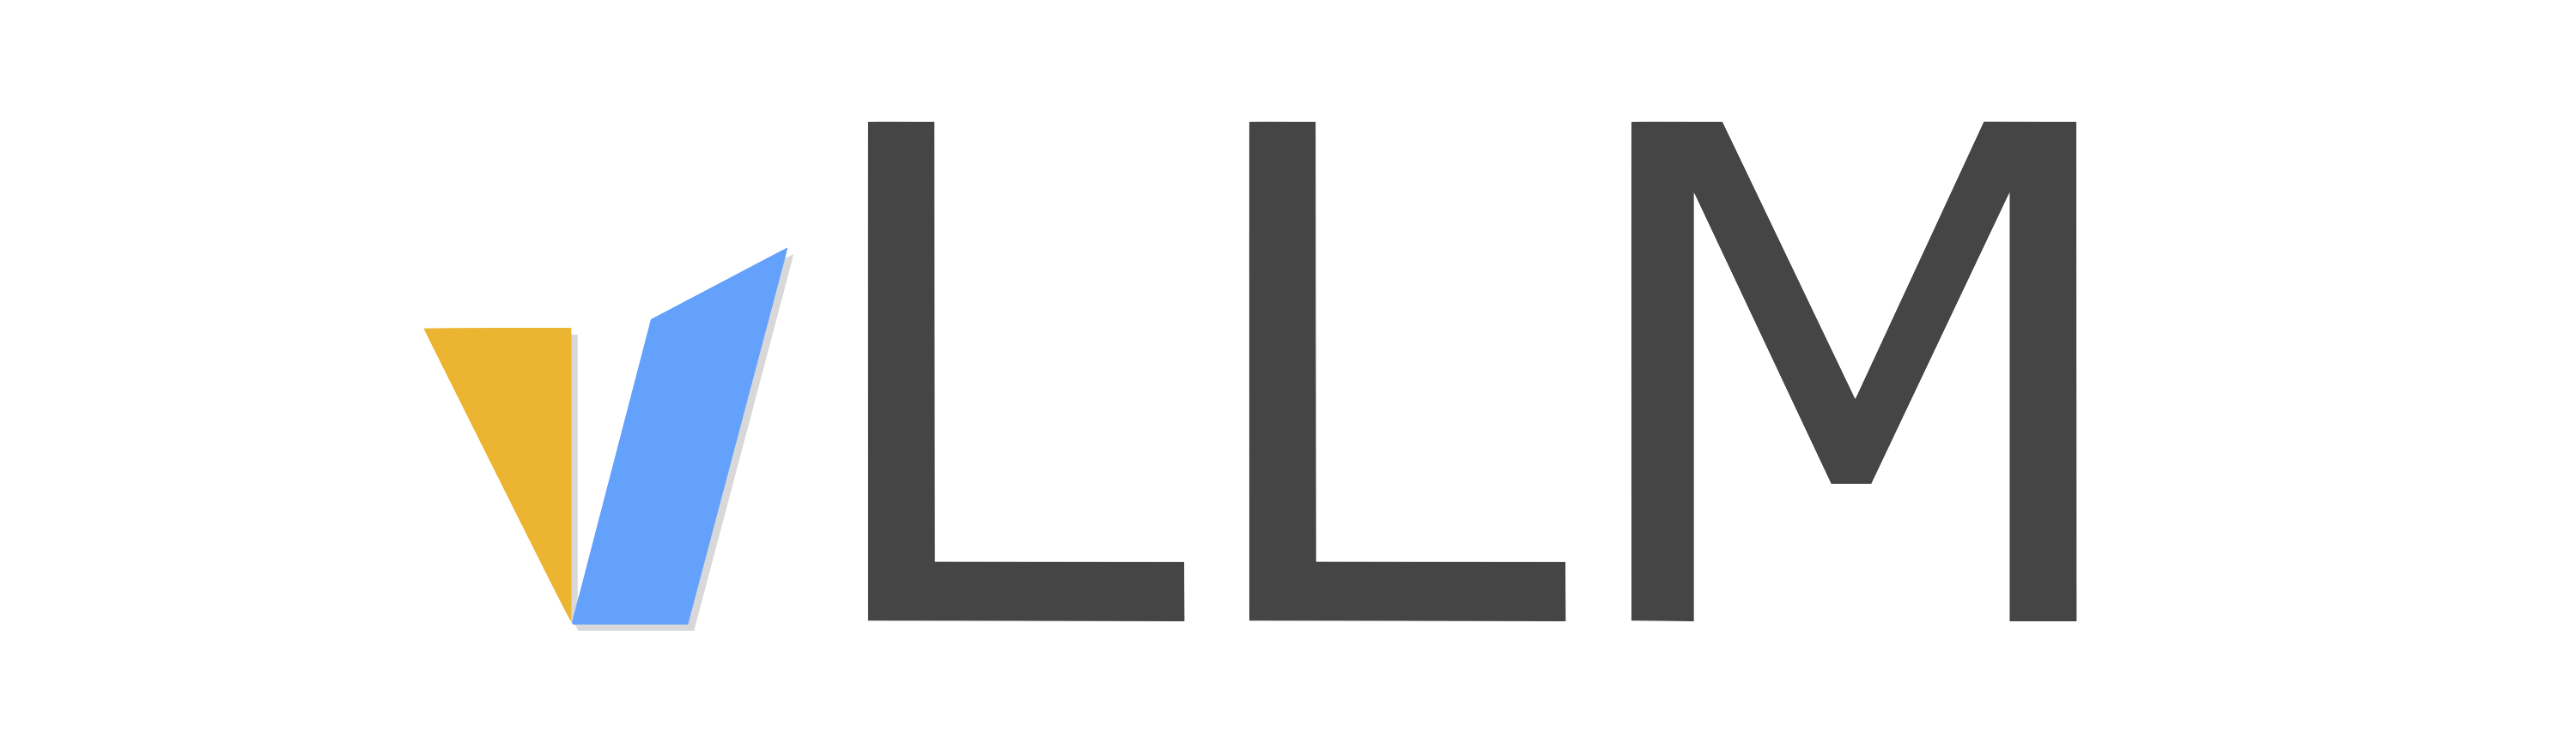 Vllm logo